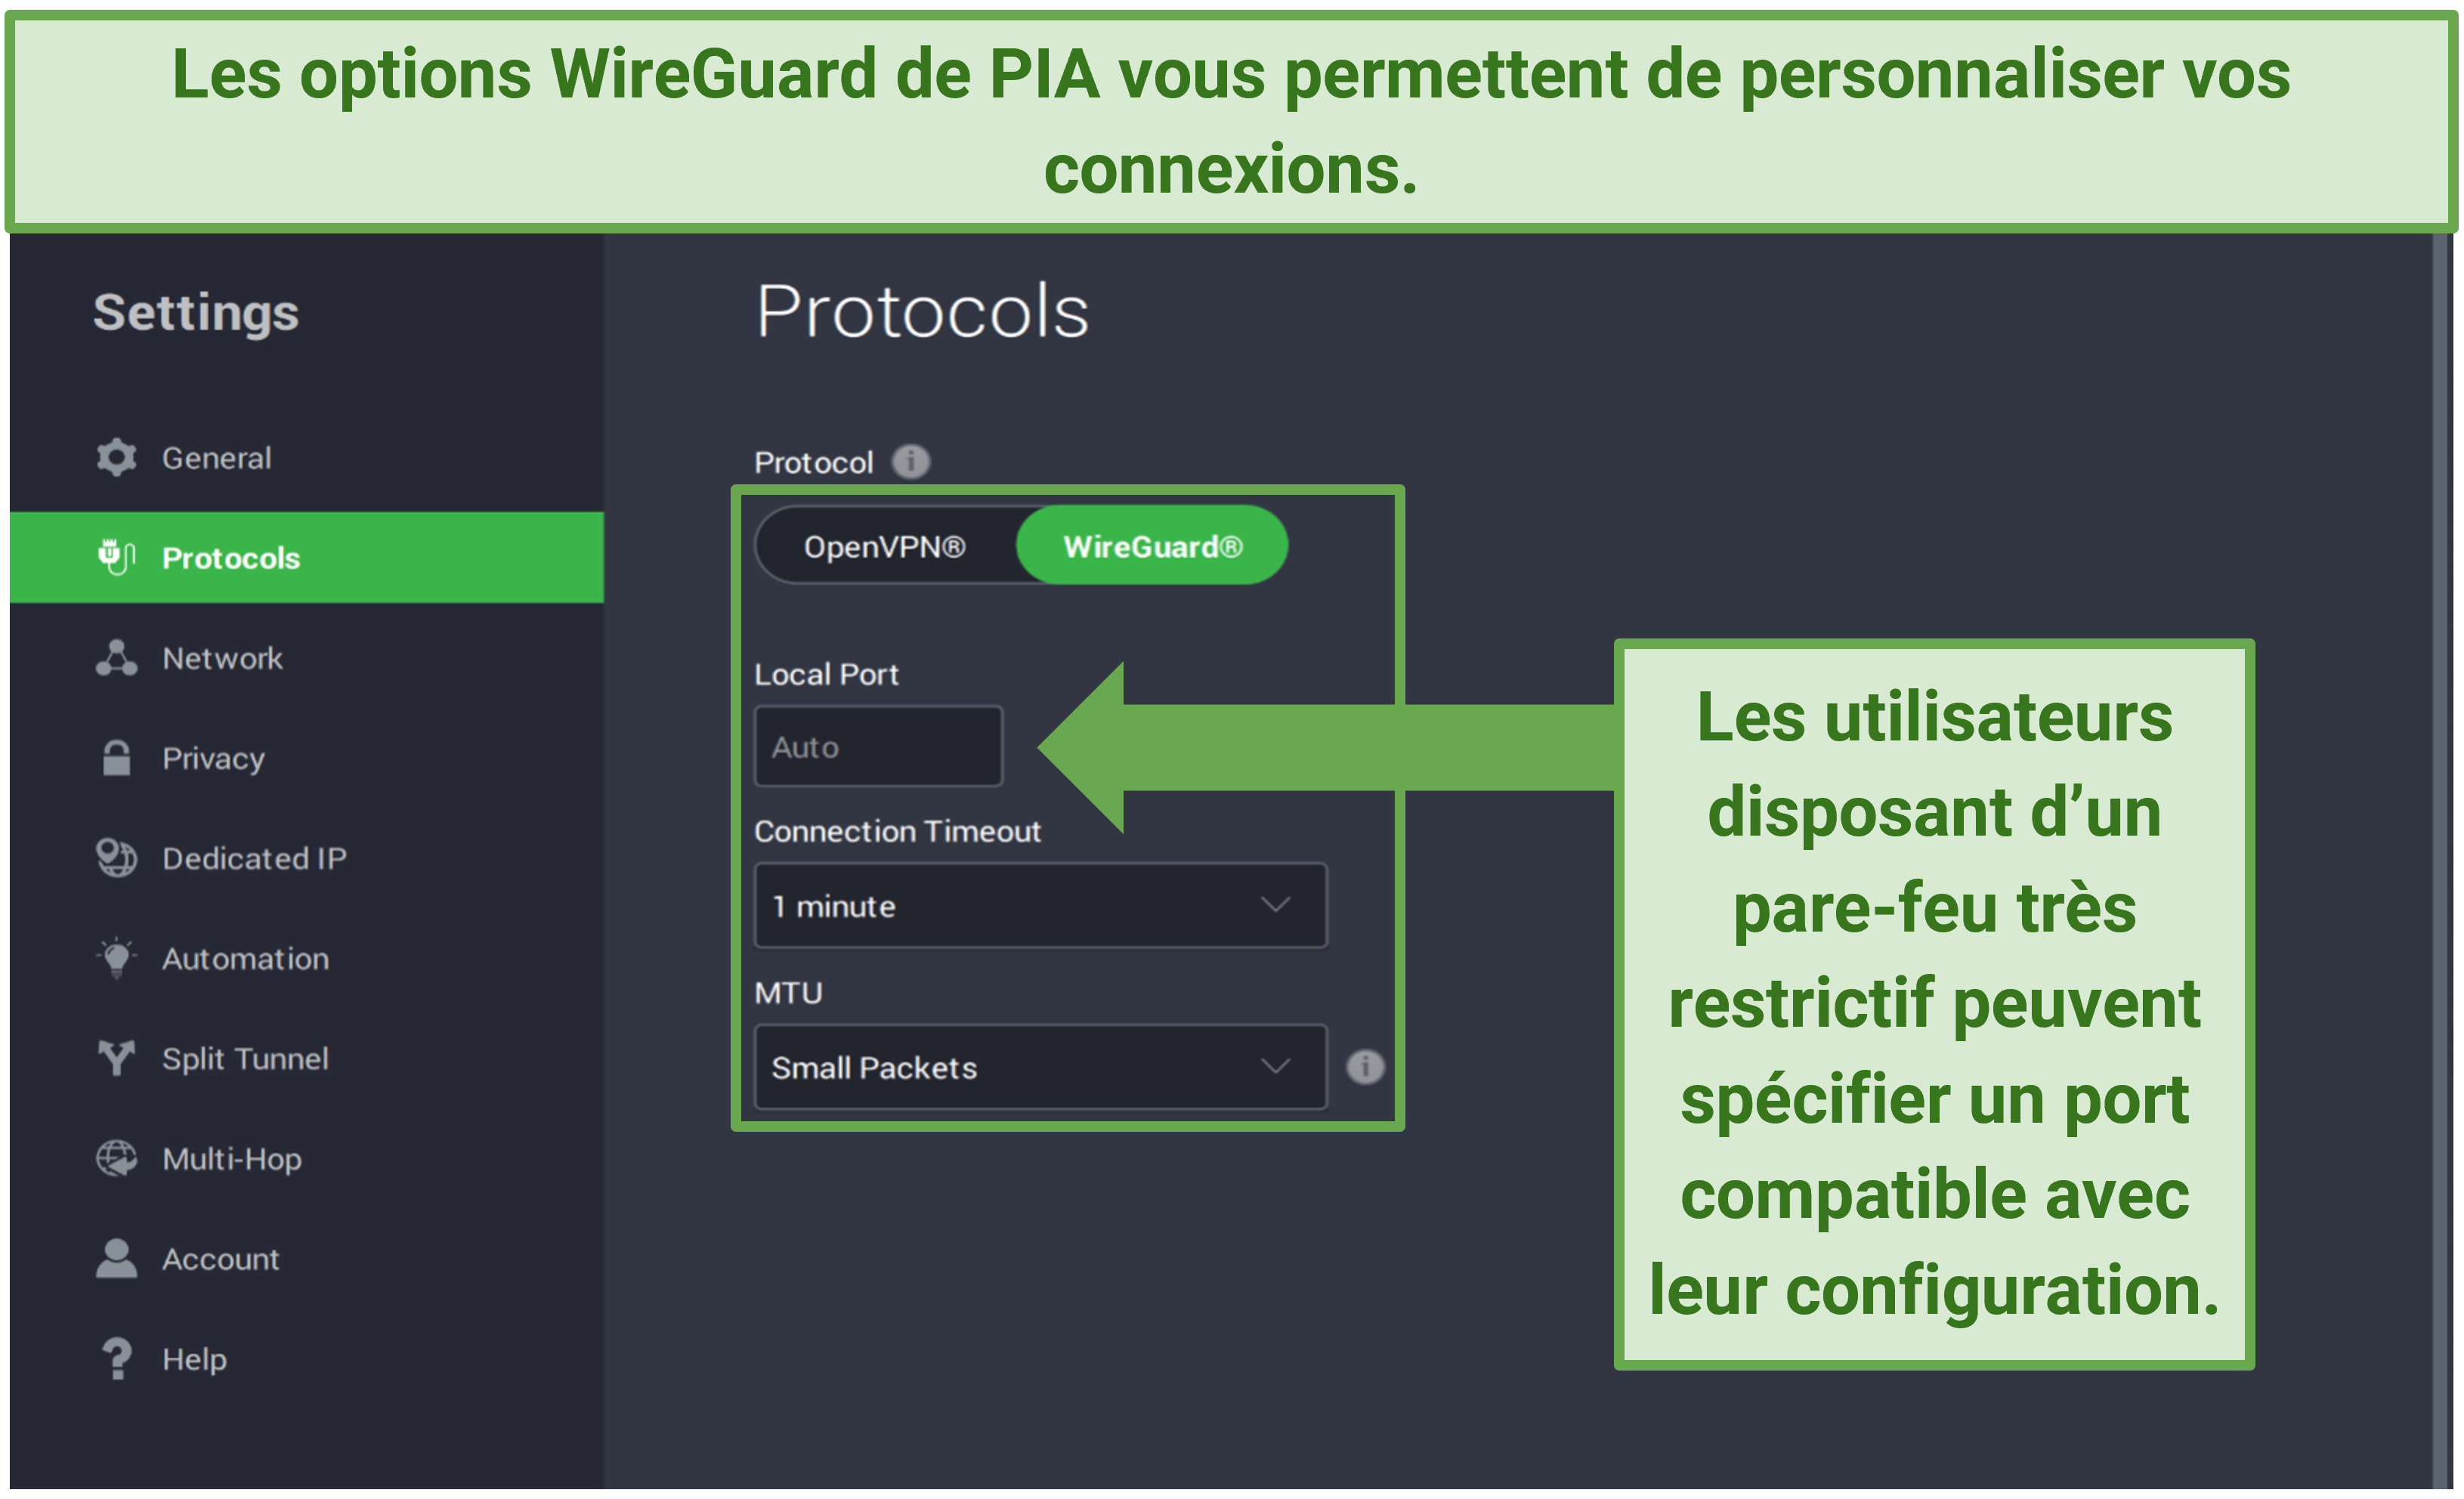 Capture d’écran montrant les options personnalisables de WireGuard dans les paramètres de l’application PIA